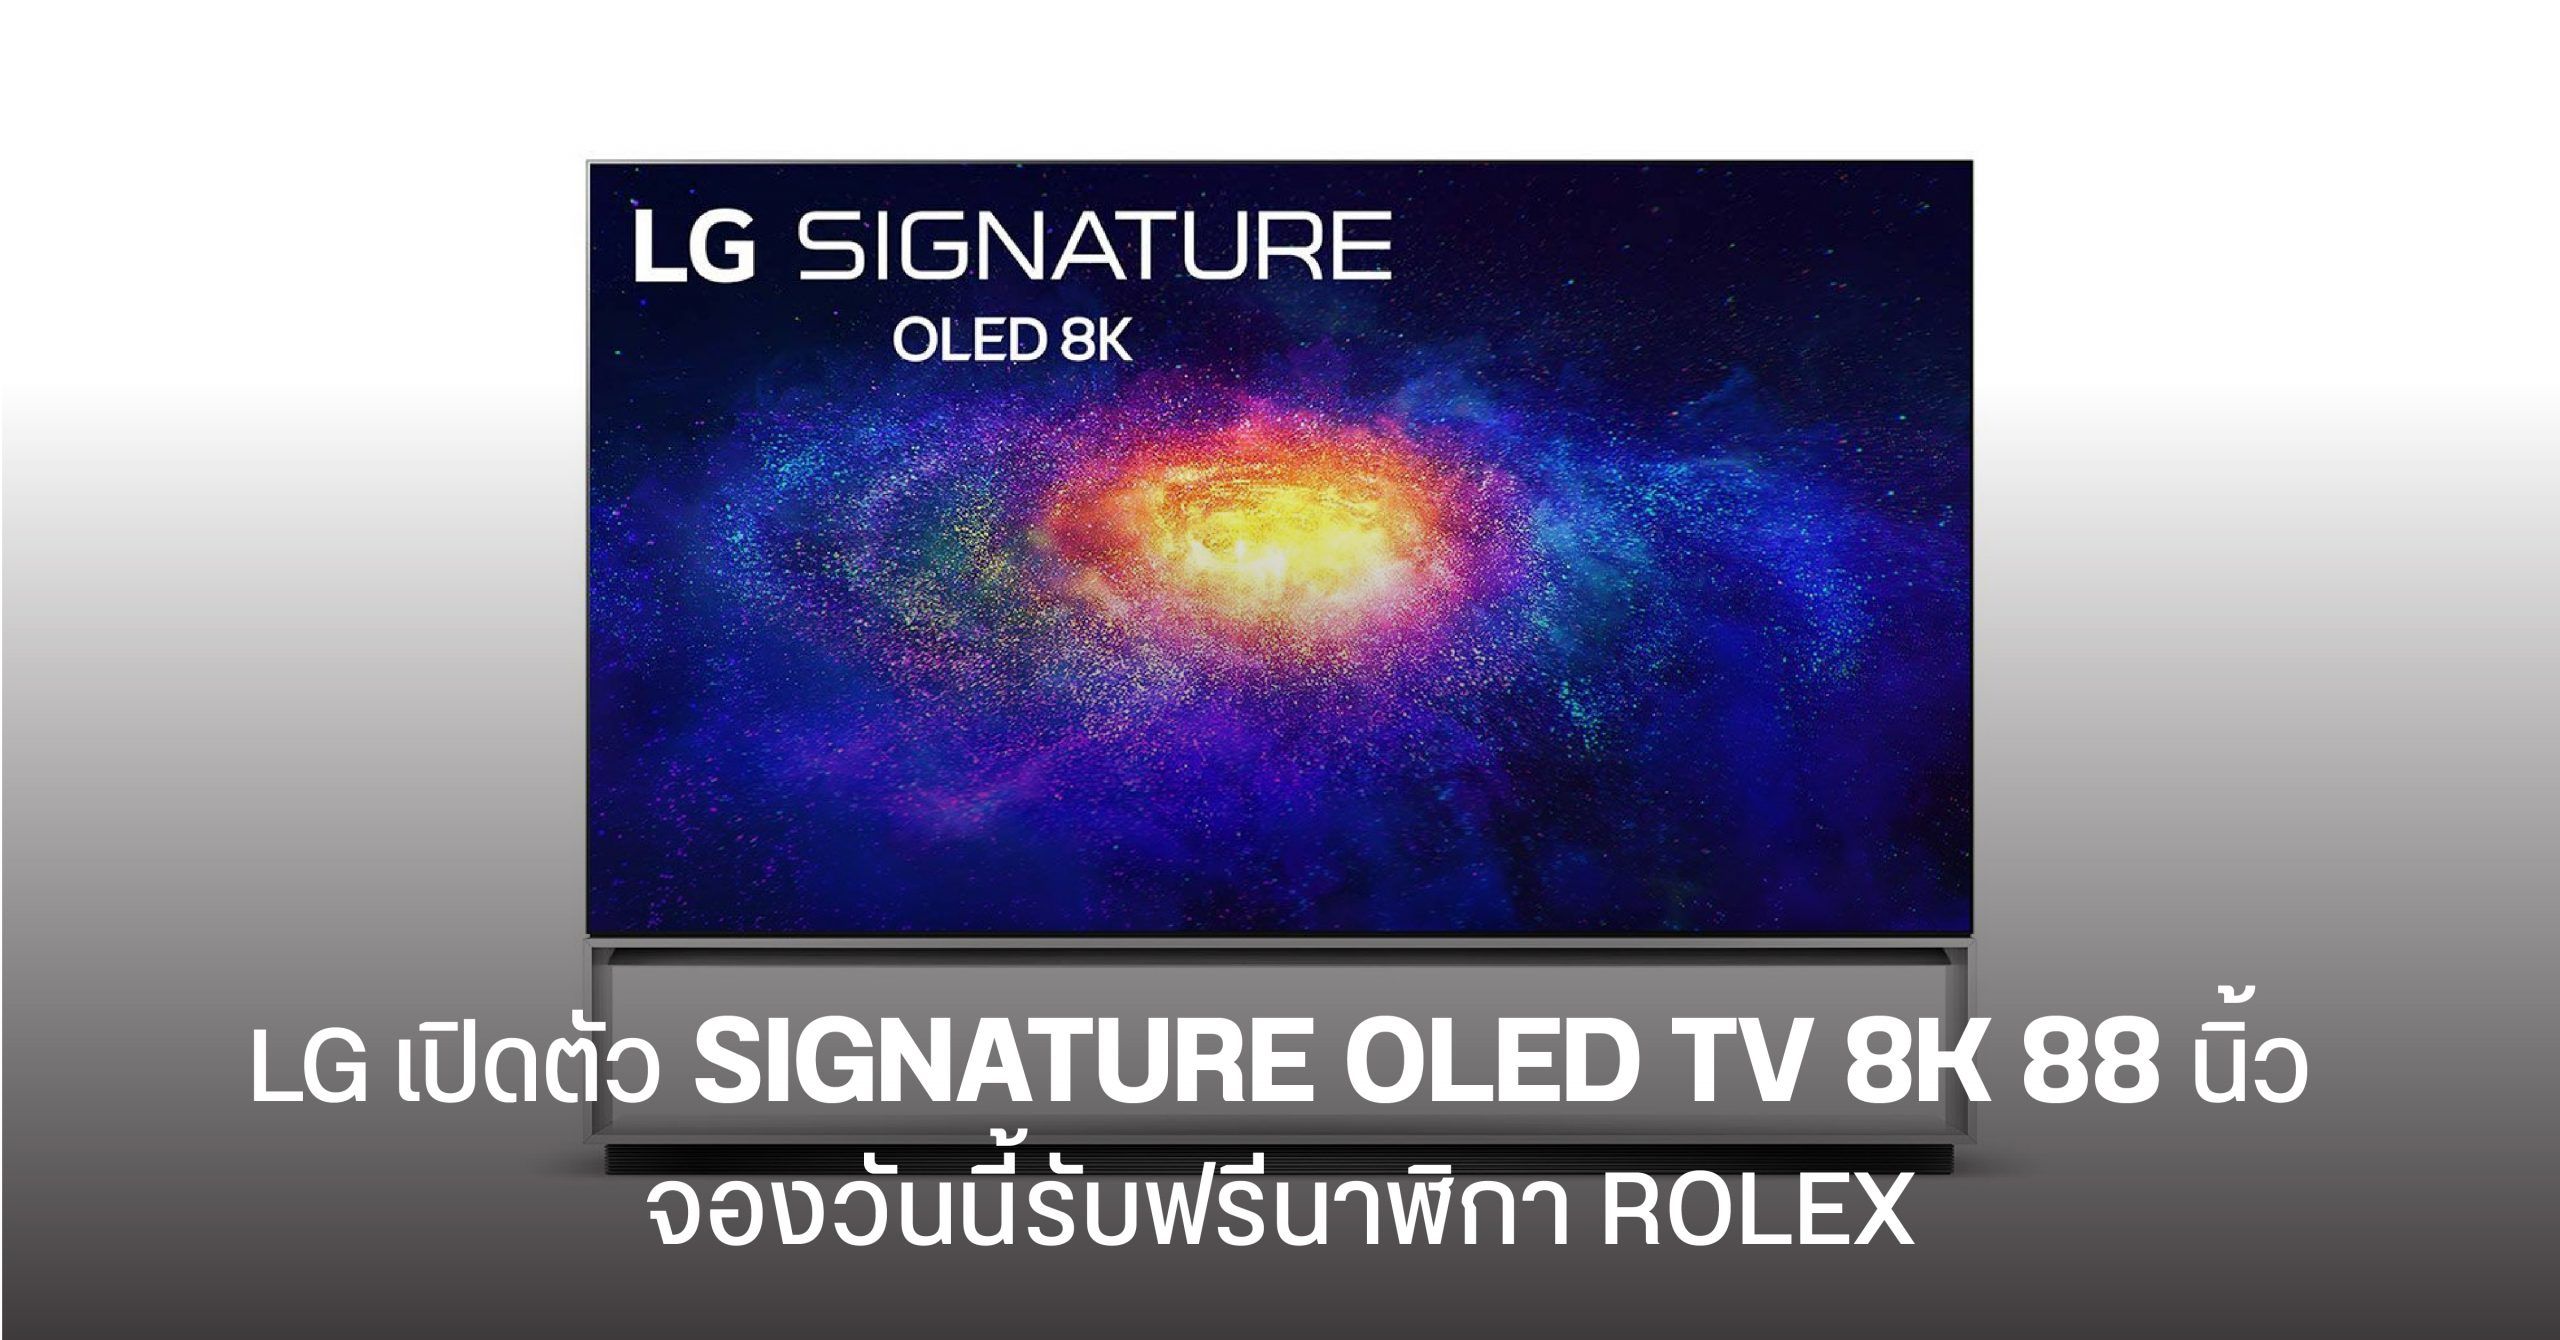 LG เปิดตัว SIGNATURE OLED TV 8K ขนาด 88 นิ้ว เคาะราคาราว 2 ล้านบาท จองวันนี้รับฟรีนาฬิกา ROLEX